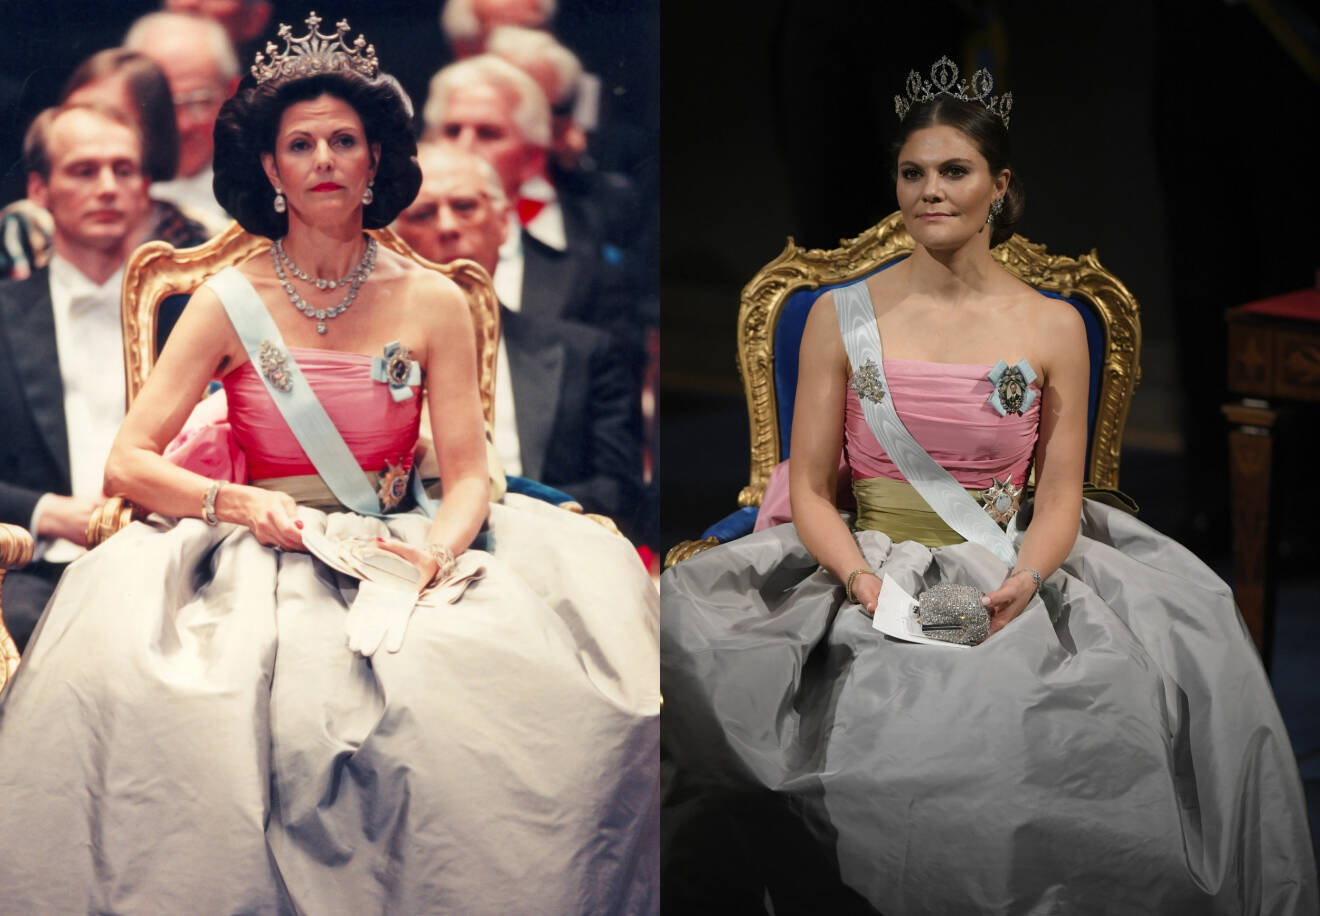 Drottning Silvia under Nobelprisets utdelning 1995 och kronprinsessan Victoria under Nobelprisets utdelning 2018.